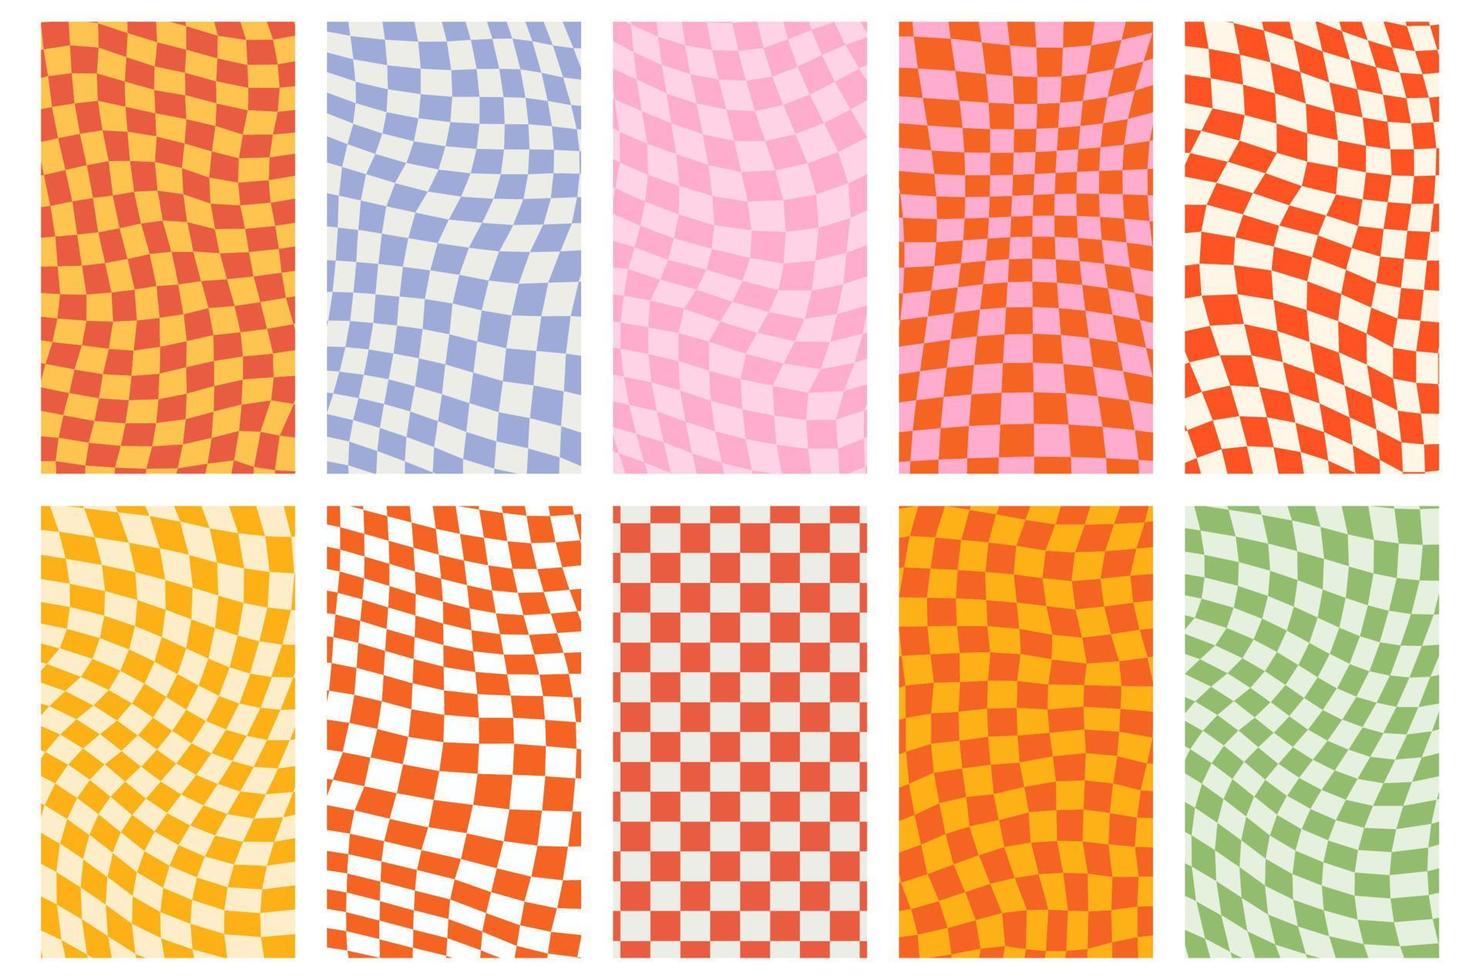 Fondo de patrón retro maravilloso en estilo de fondo psicodélico a cuadros. un tablero de ajedrez en un diseño abstracto minimalista con un ambiente estético de los años 60 y 70. estilo hippie y2k. Ilustración de vector de impresión funky